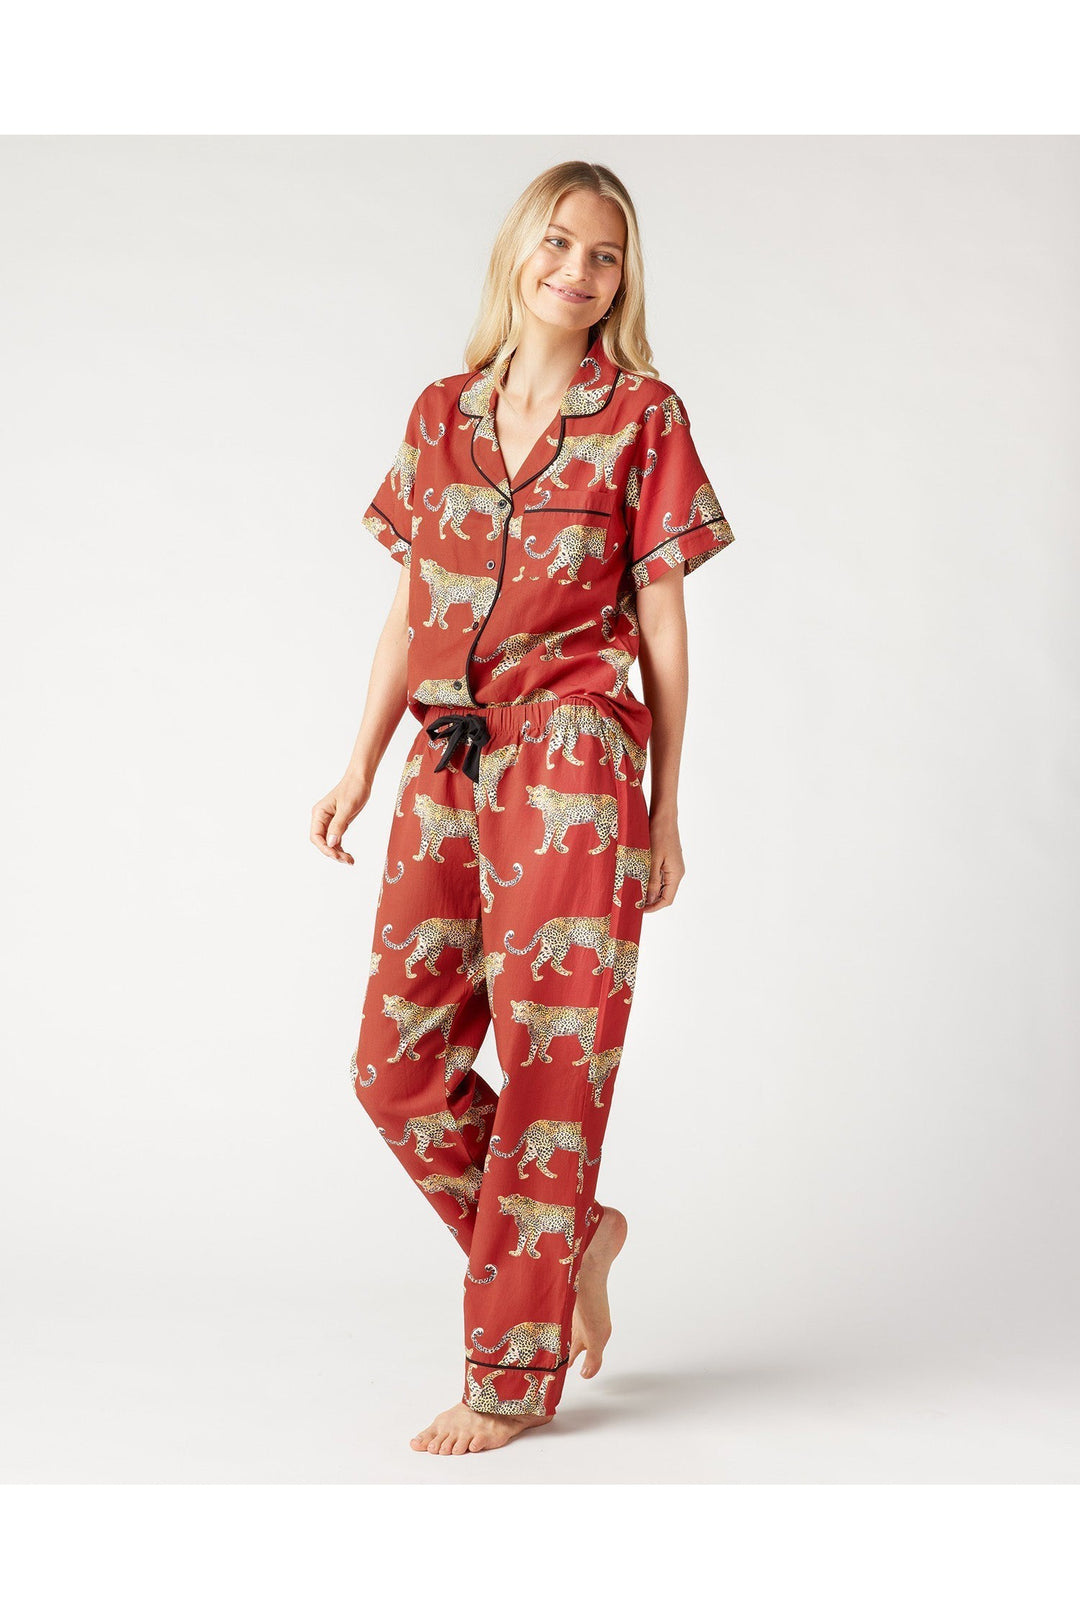 Katie Kime | Red Cheetahs Pajama Pant Set